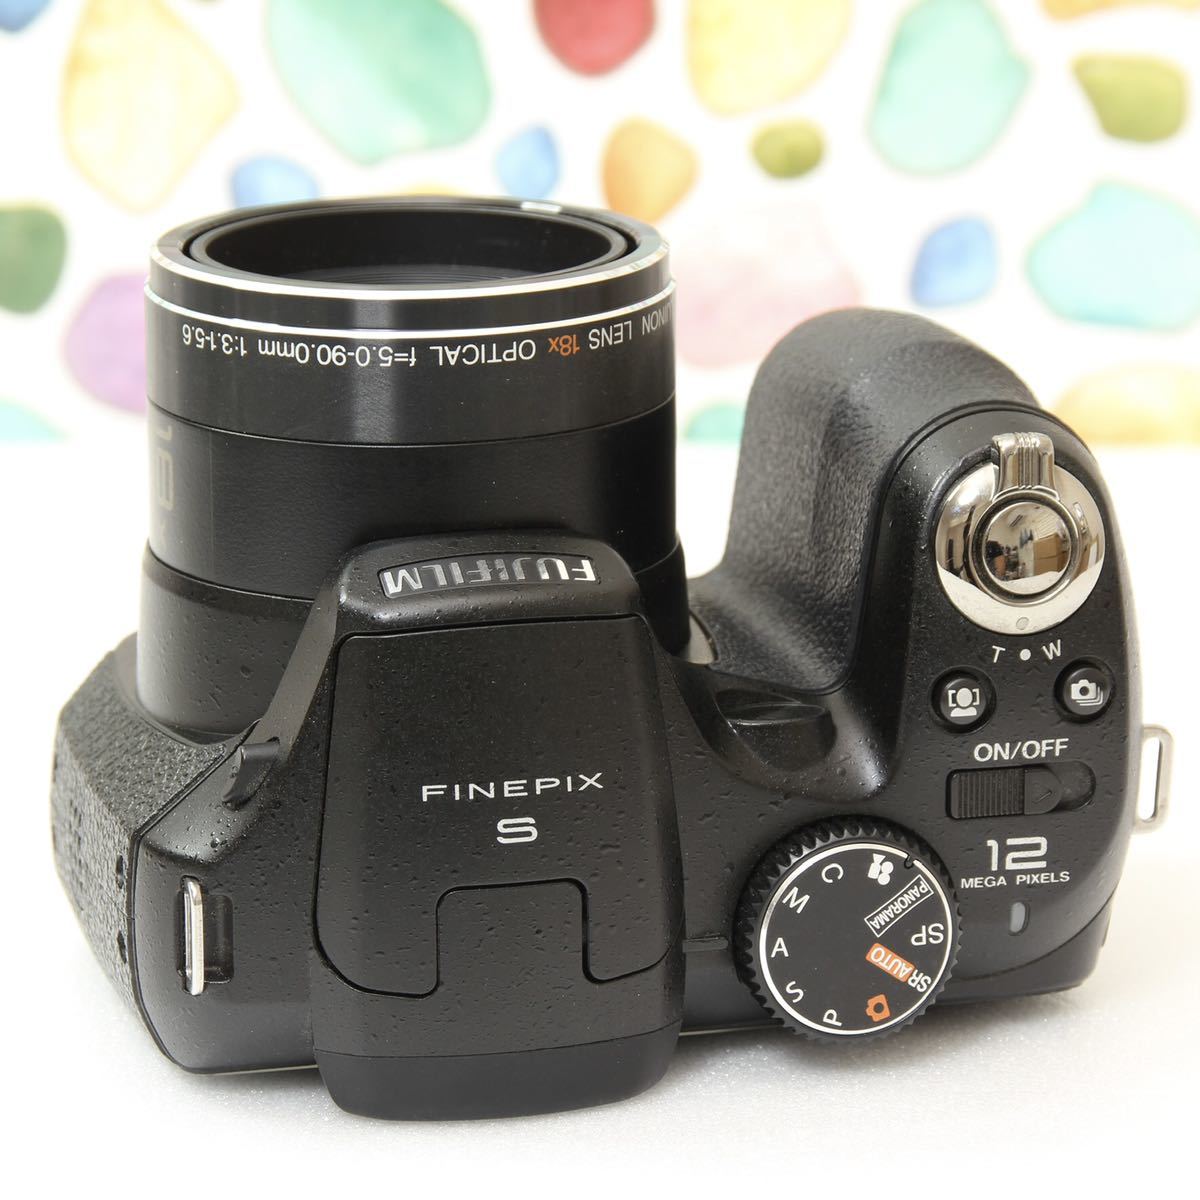 程度の良い富士フイルムの一眼レフカメラファインピックスS-9000 - カメラ